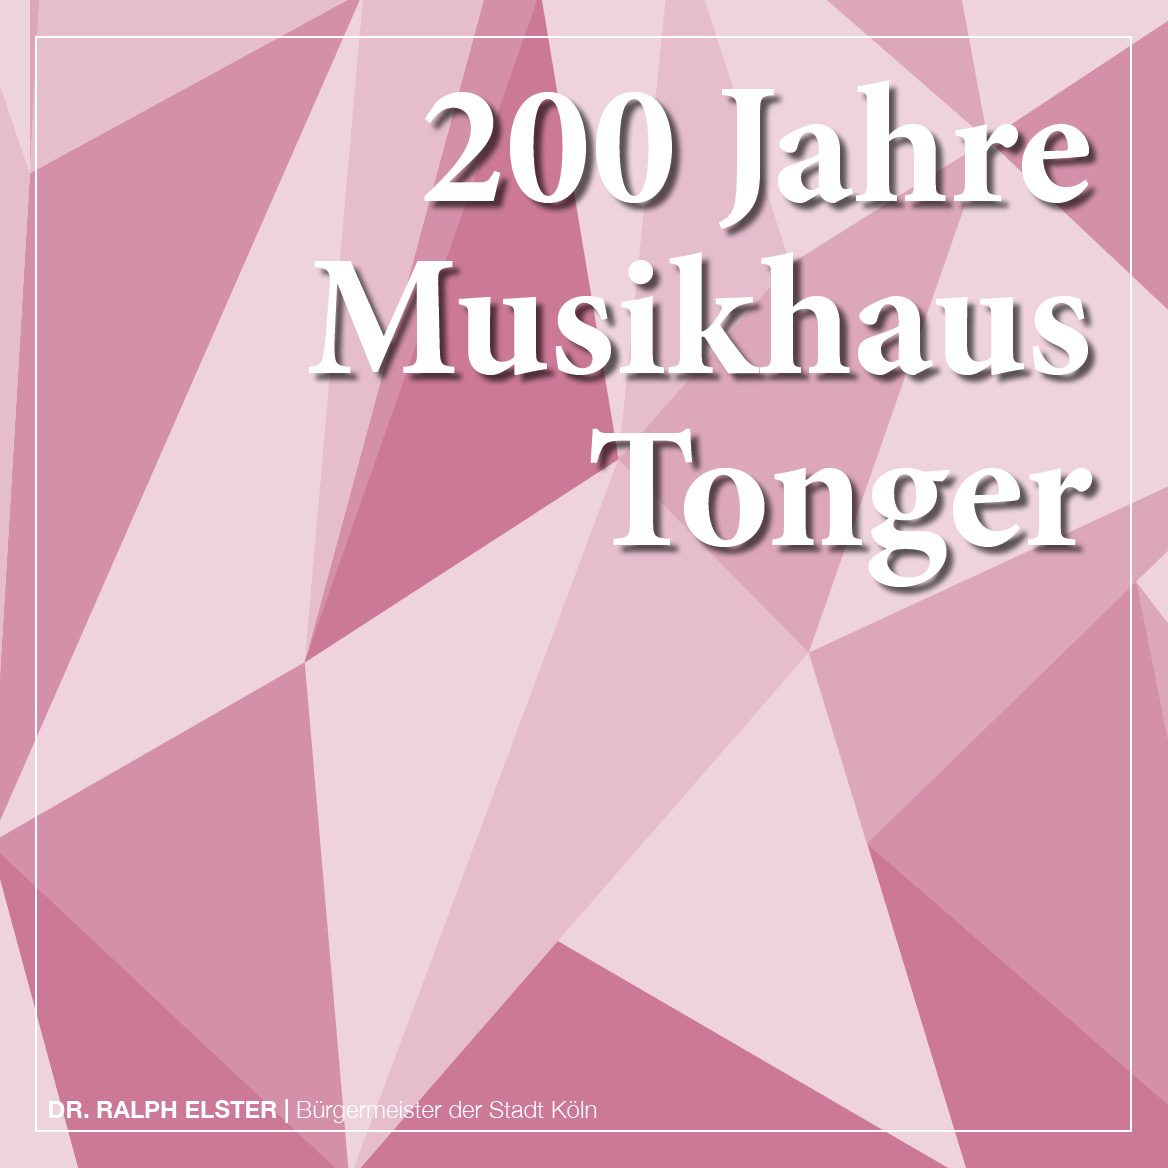 Kölner Musikhaus Tonger: „Verbunden mit Qualität und Solidität“